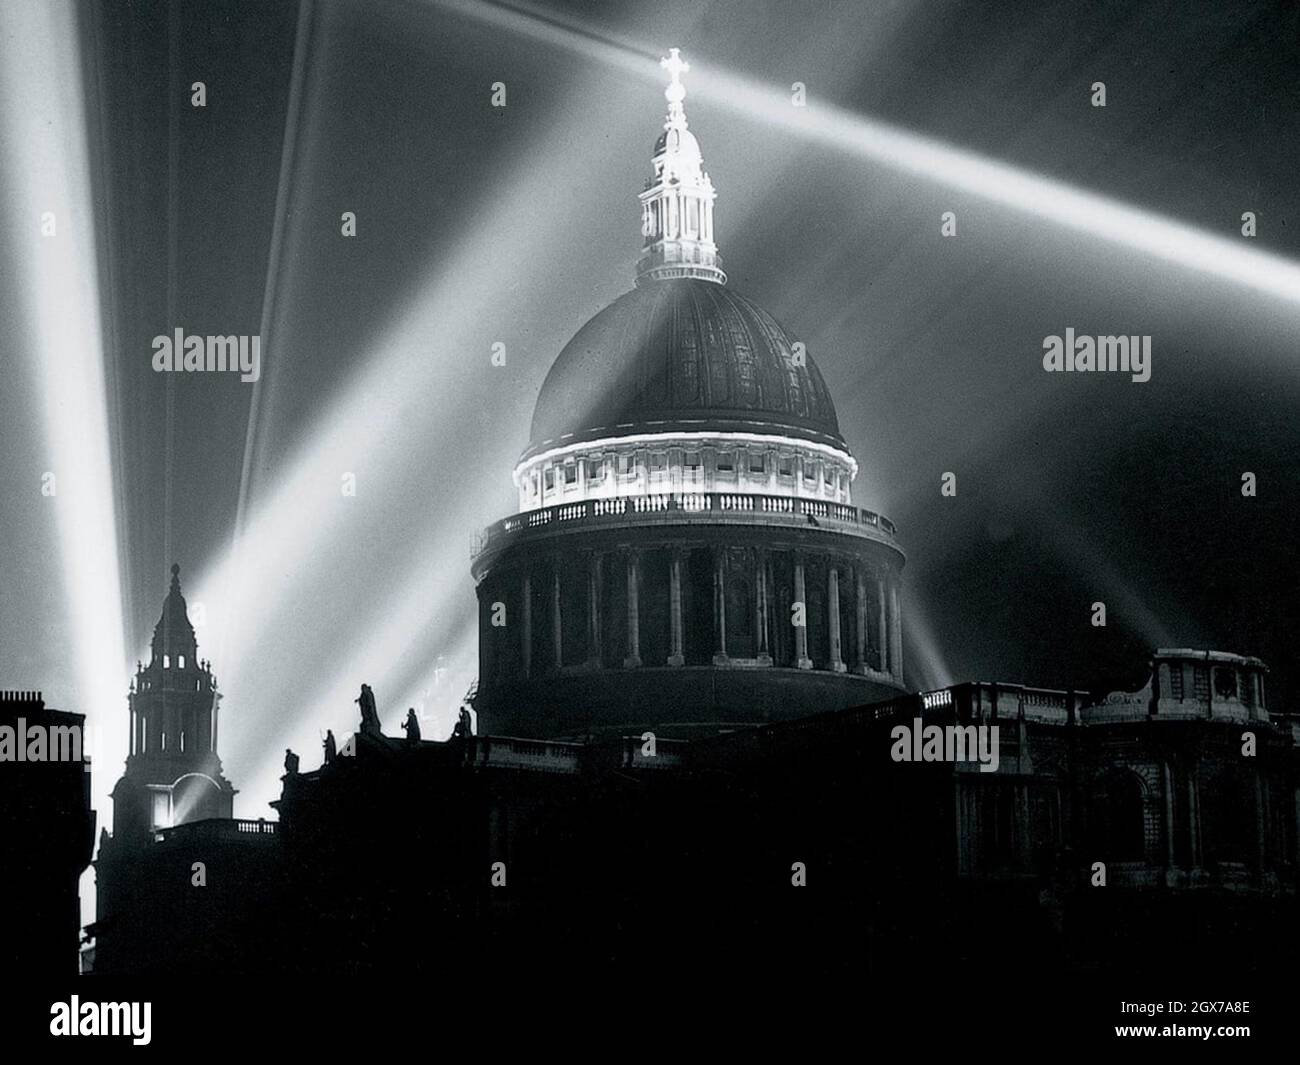 Cathédrale Saint-Paul de Londres entourée de projecteurs anti-aériens pendant le Blitz en 1940/1941 Banque D'Images